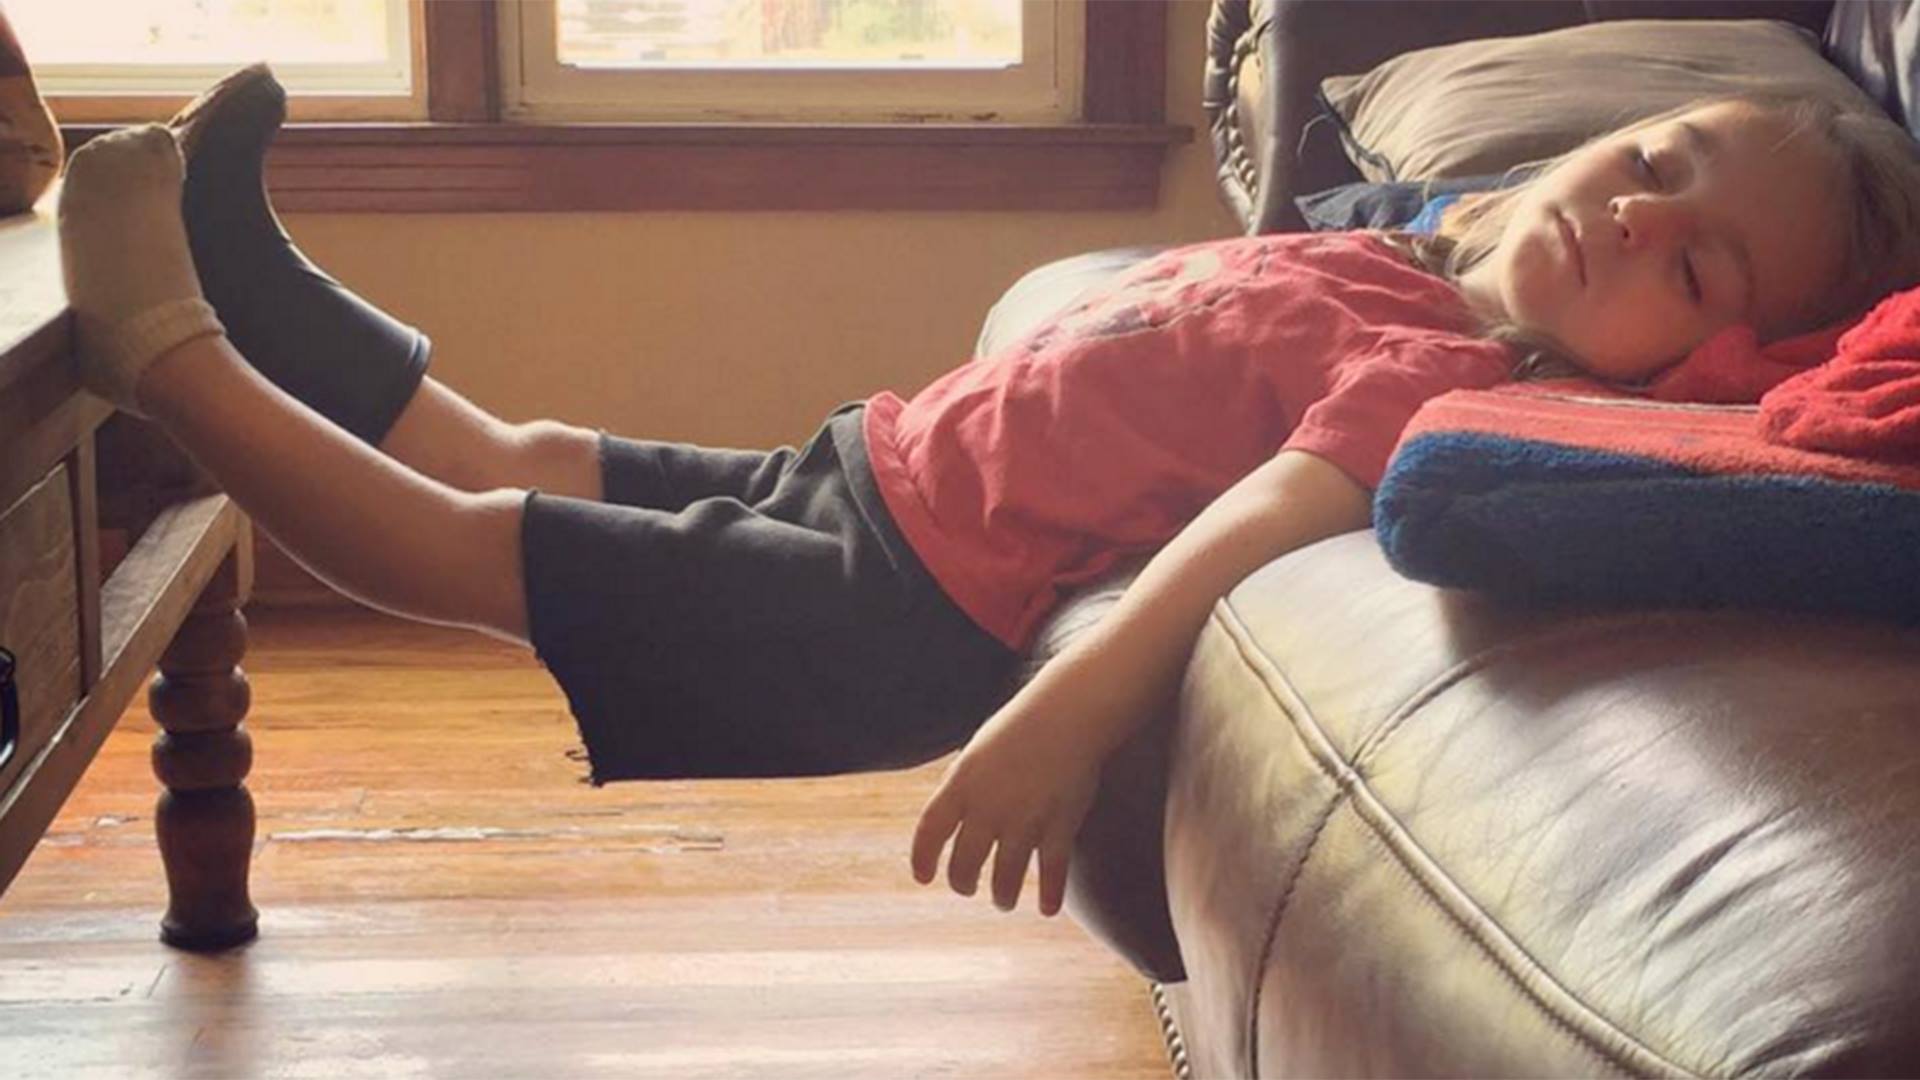 ребенок после падения с дивана уснул